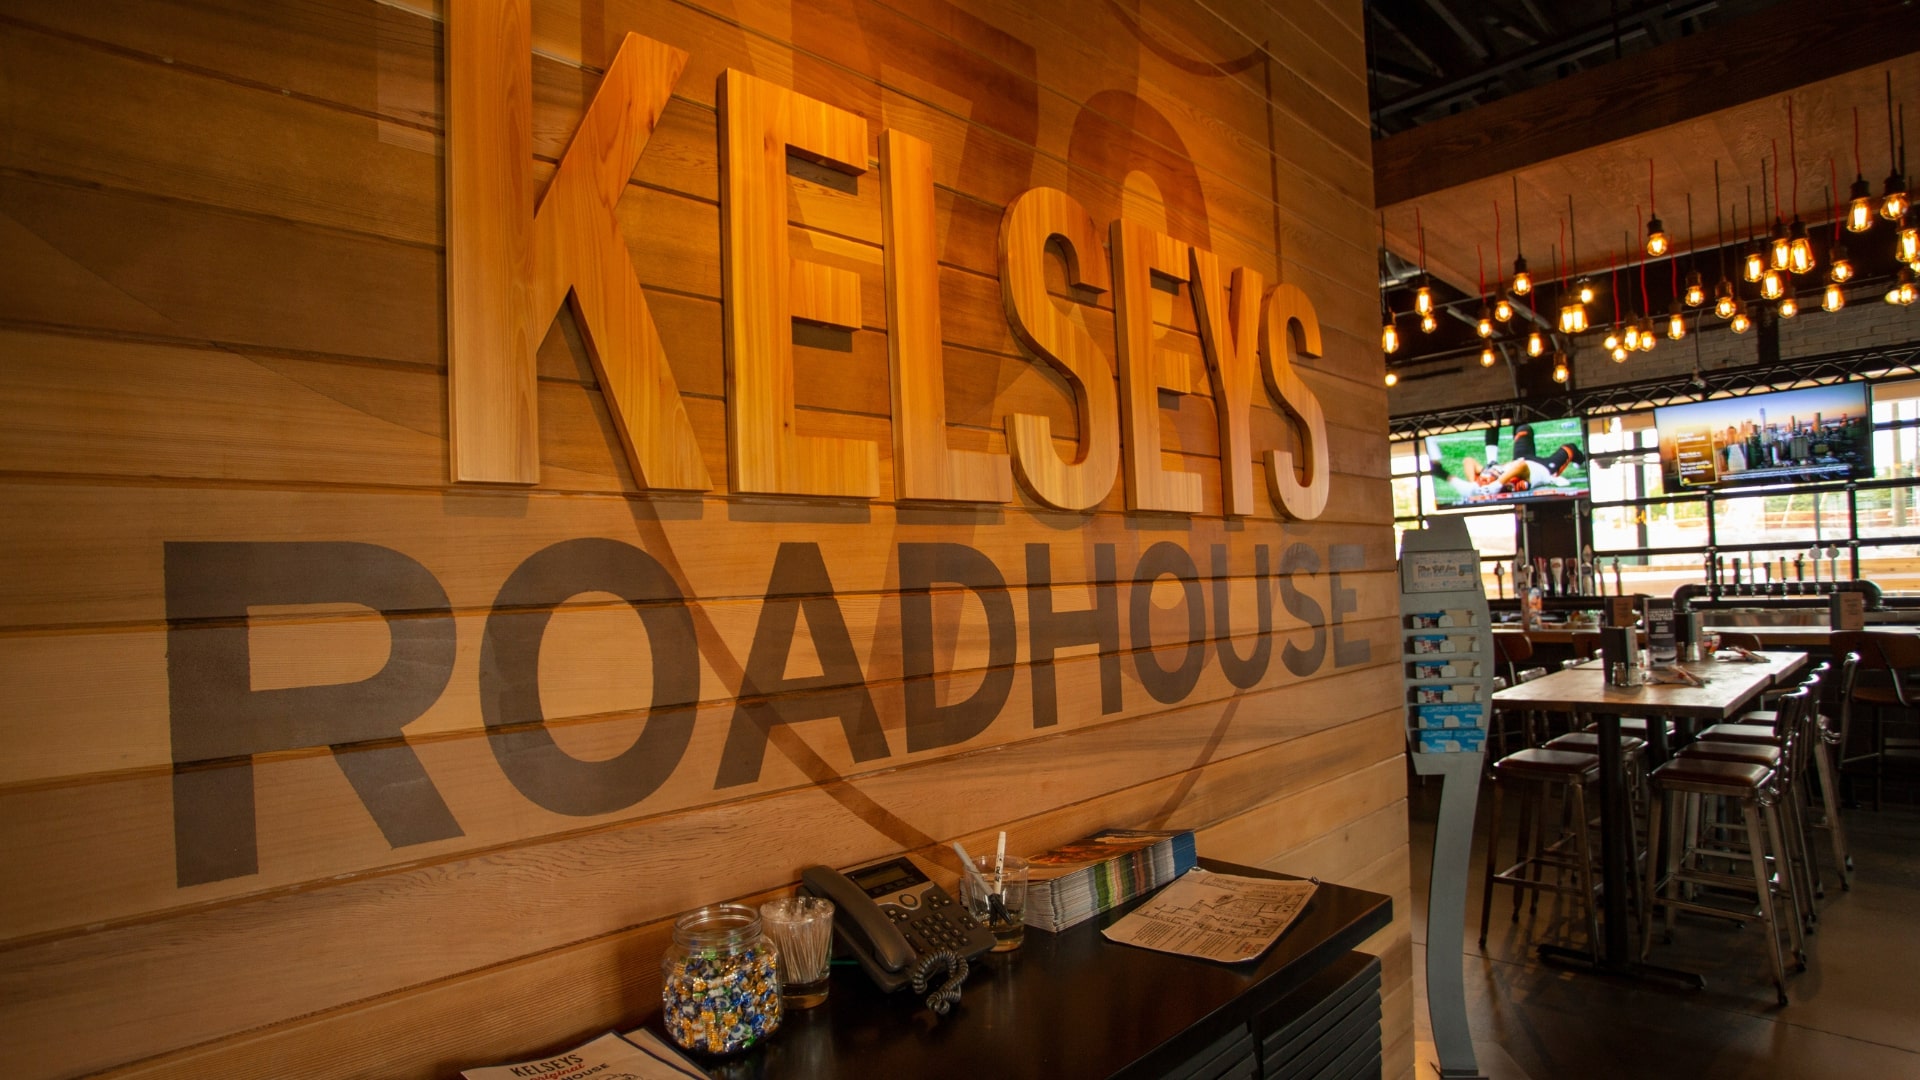 Kelseys Original Roadhouse